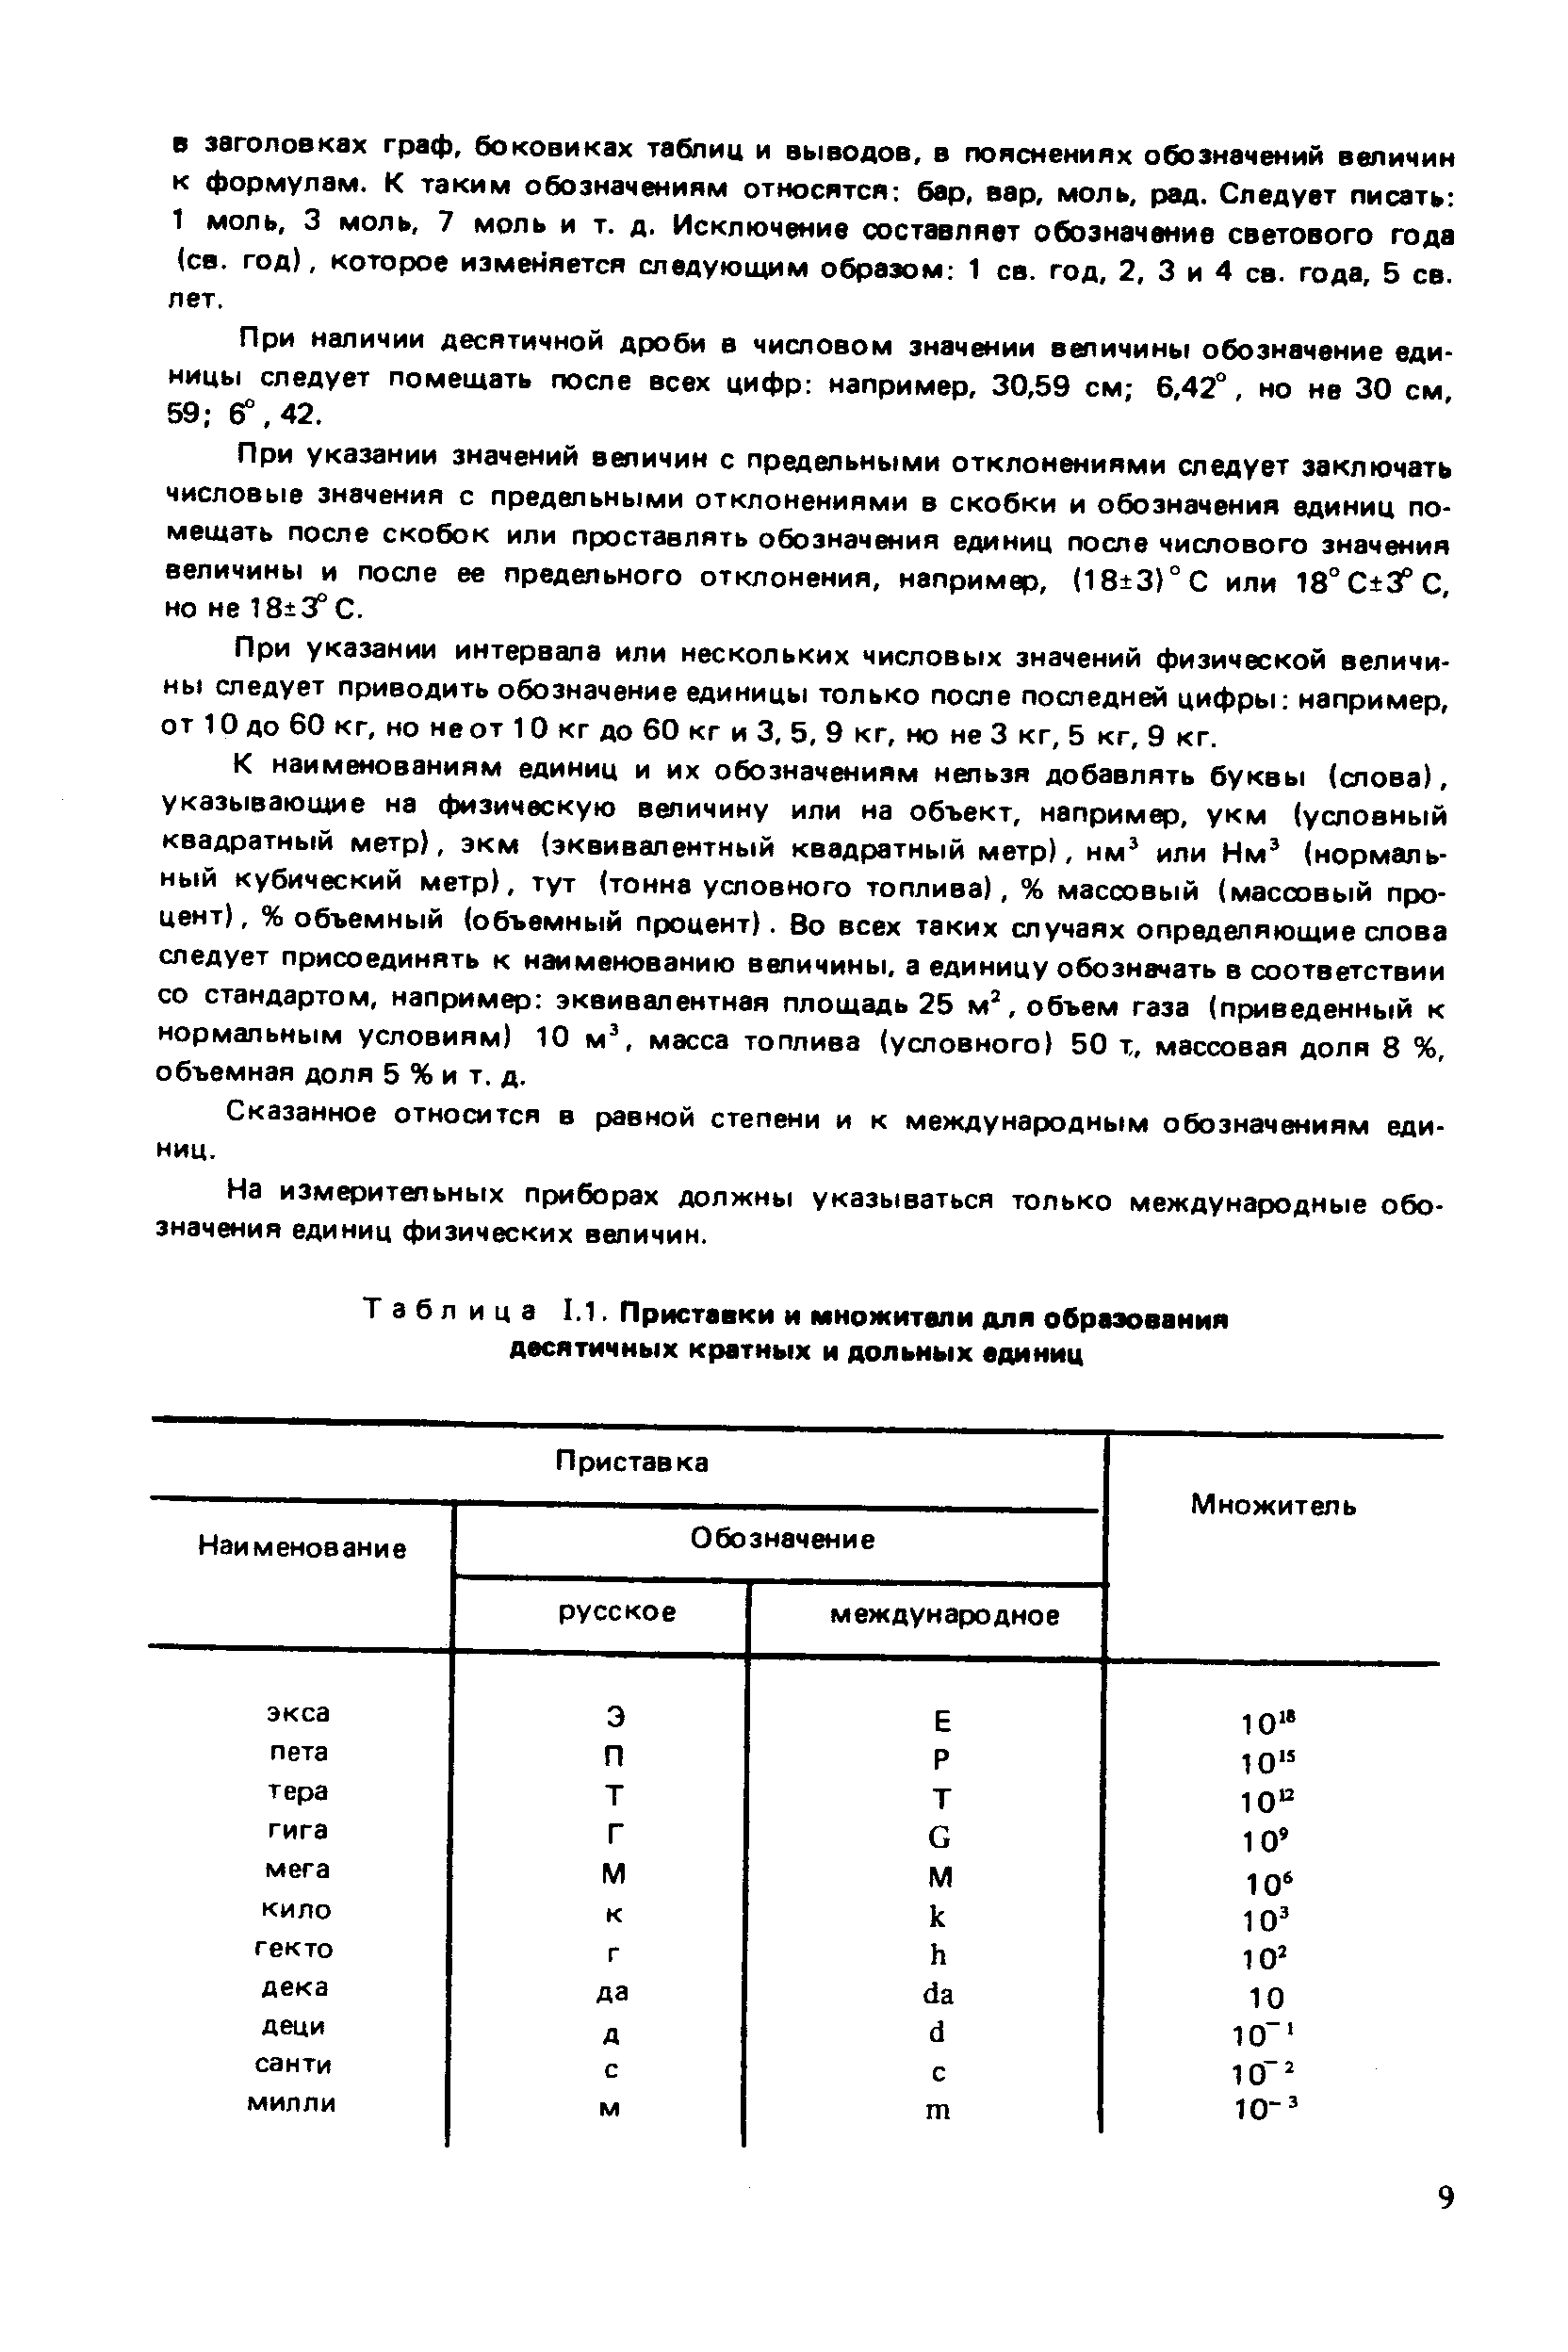 Таблица 1.1. Приставки и множители для обр десятичных кратных и дольных единиц
